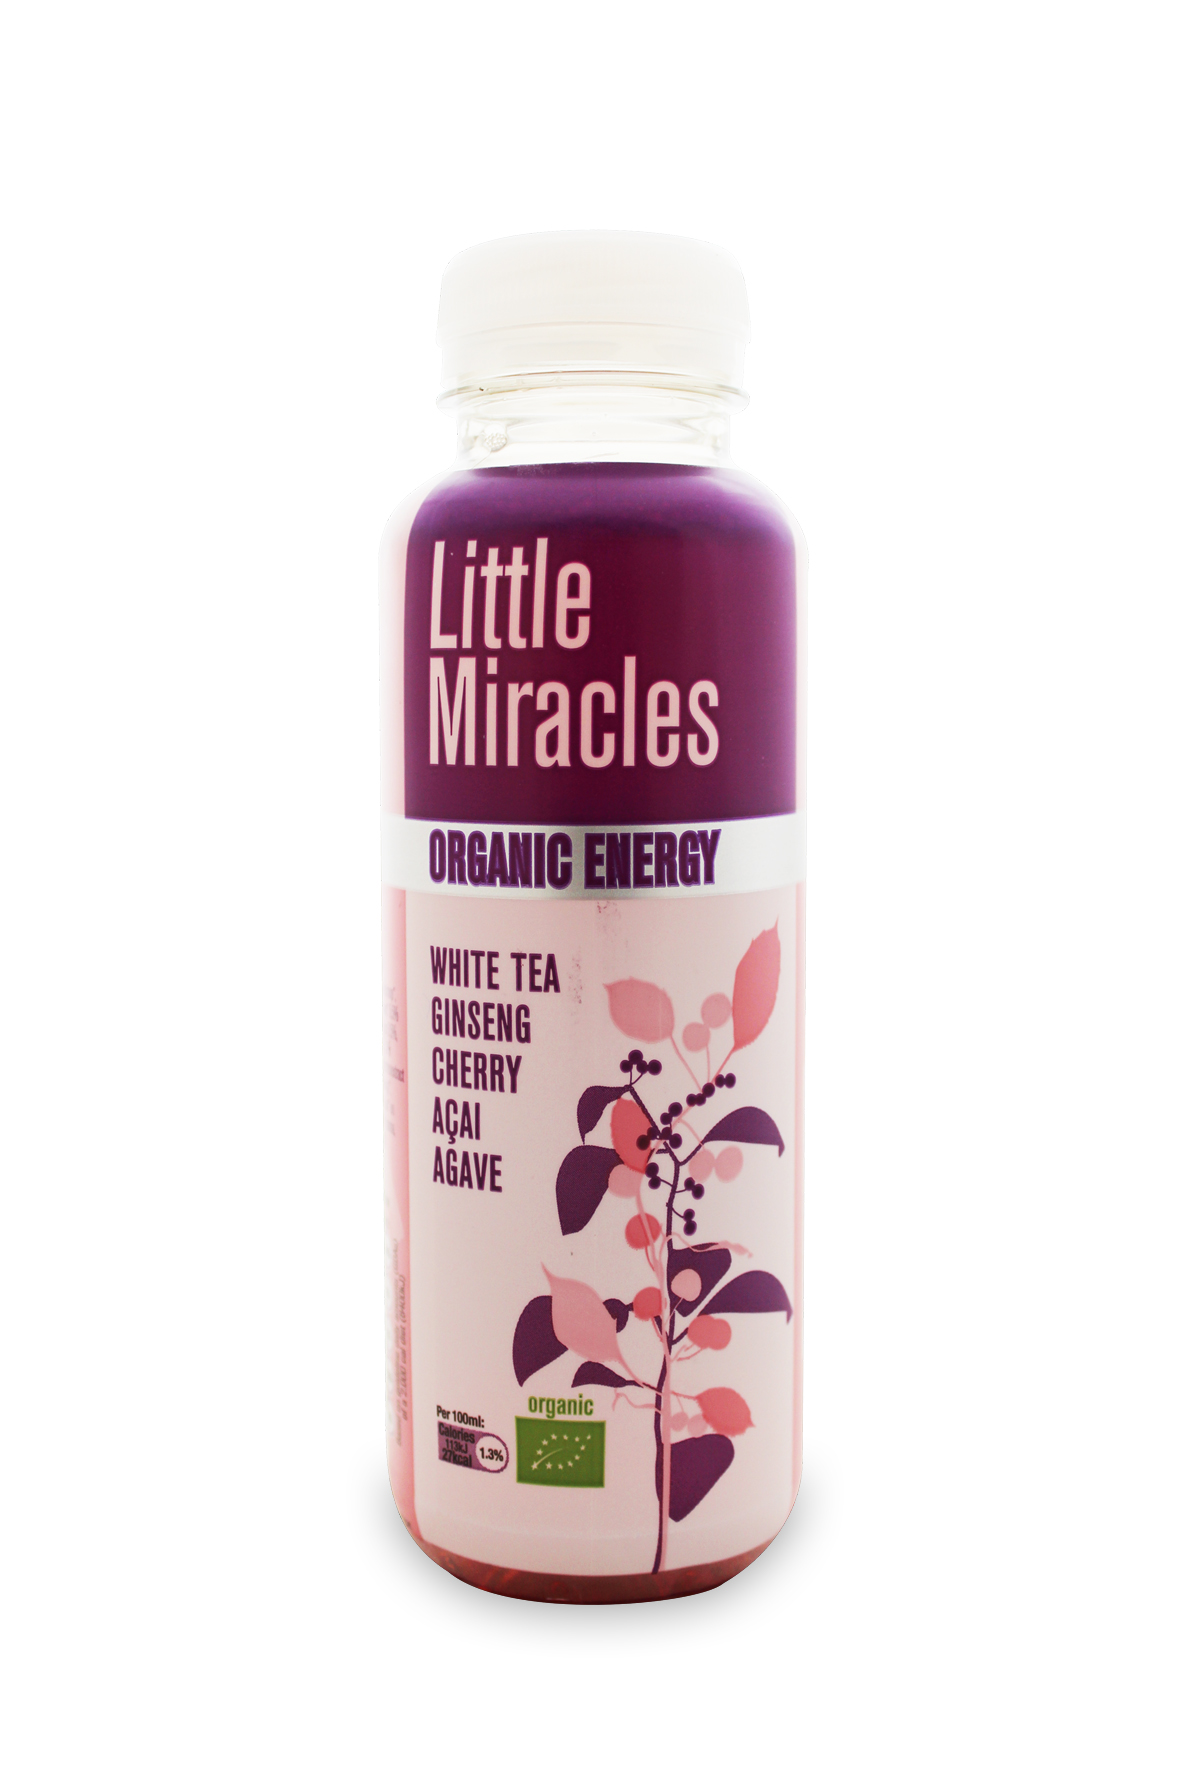 Little Miracles napój energetyczny BIO o smaku białej herbaty, żeńszenia, wiśni, acai